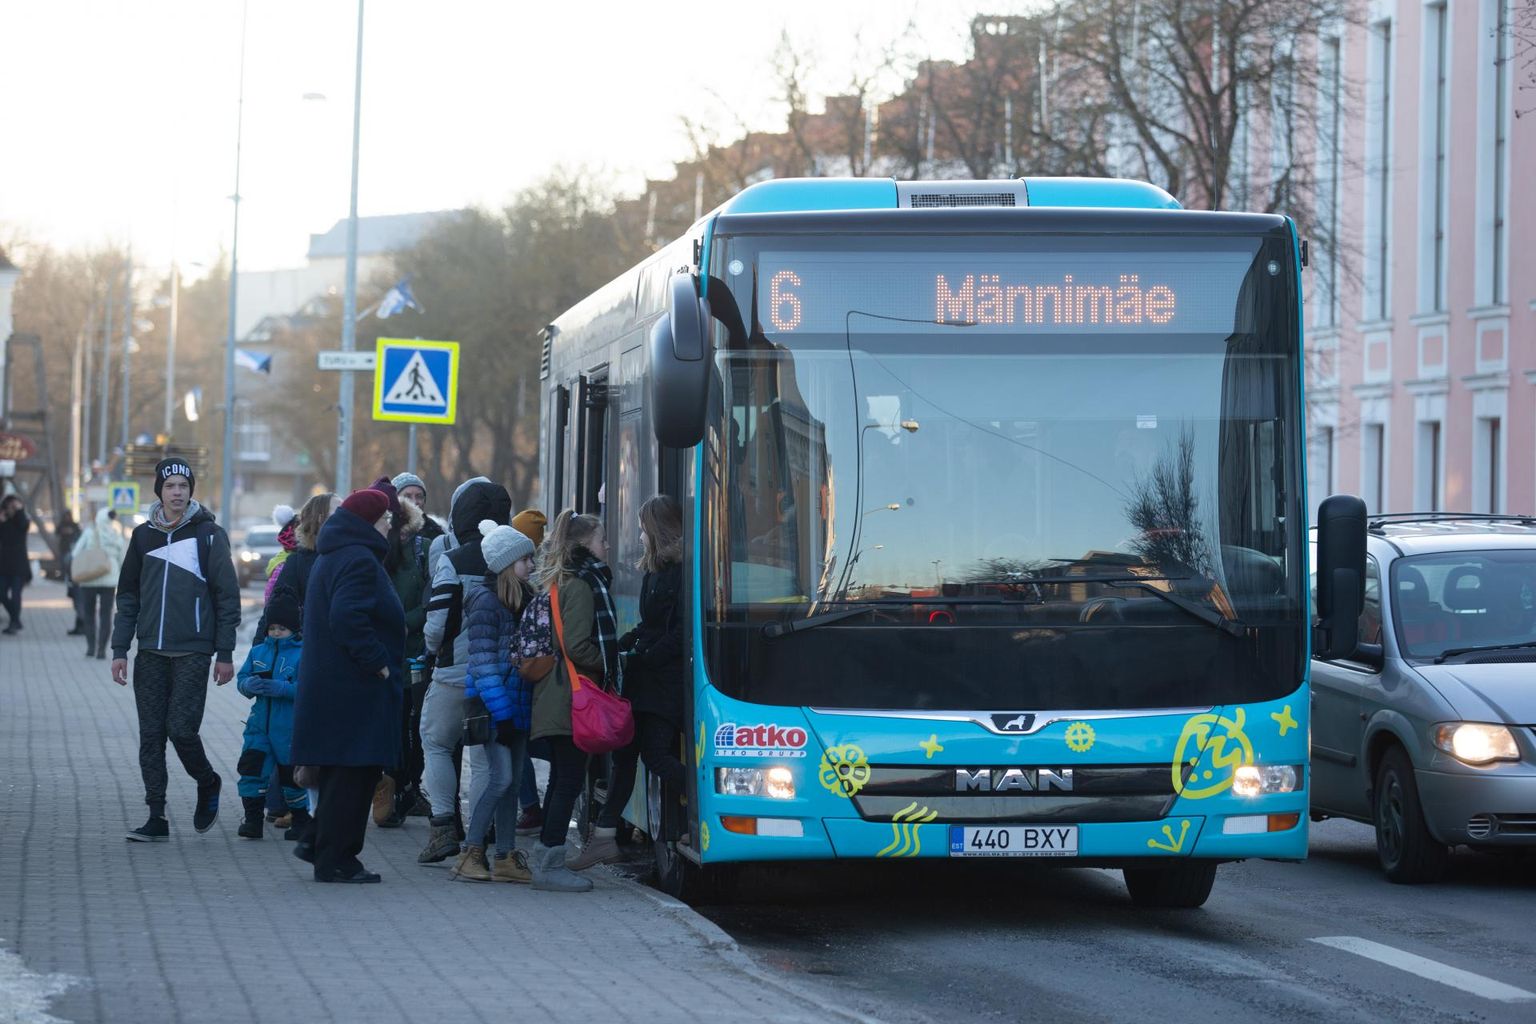 Viljandisse tahetakse luua uus bussiliinivõrgustik. Eelkõige tähendab see seda, et Viljandi linnas on eraldi terminal, kus bussid kokku saavad.